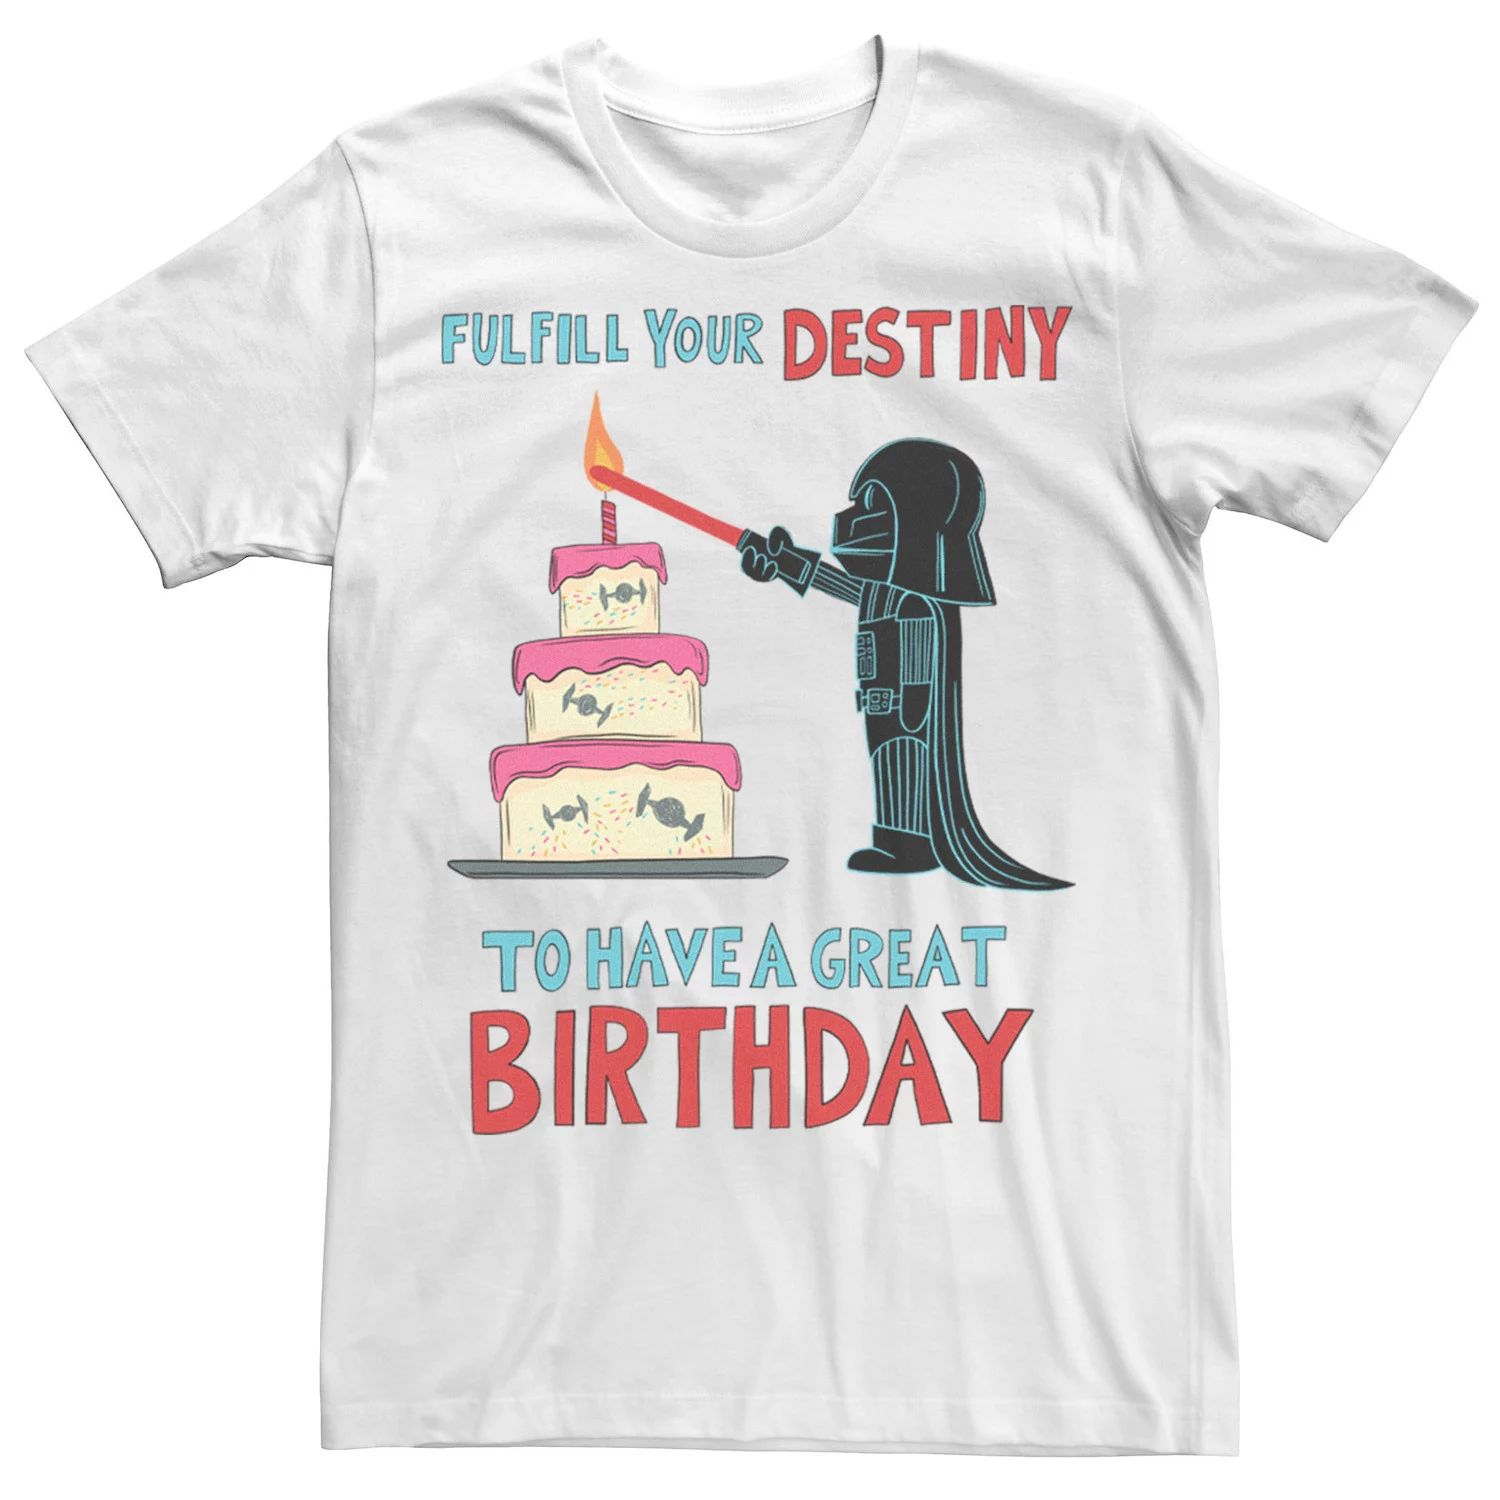 Мужская футболка в честь дня рождения Вейдера Star Wars